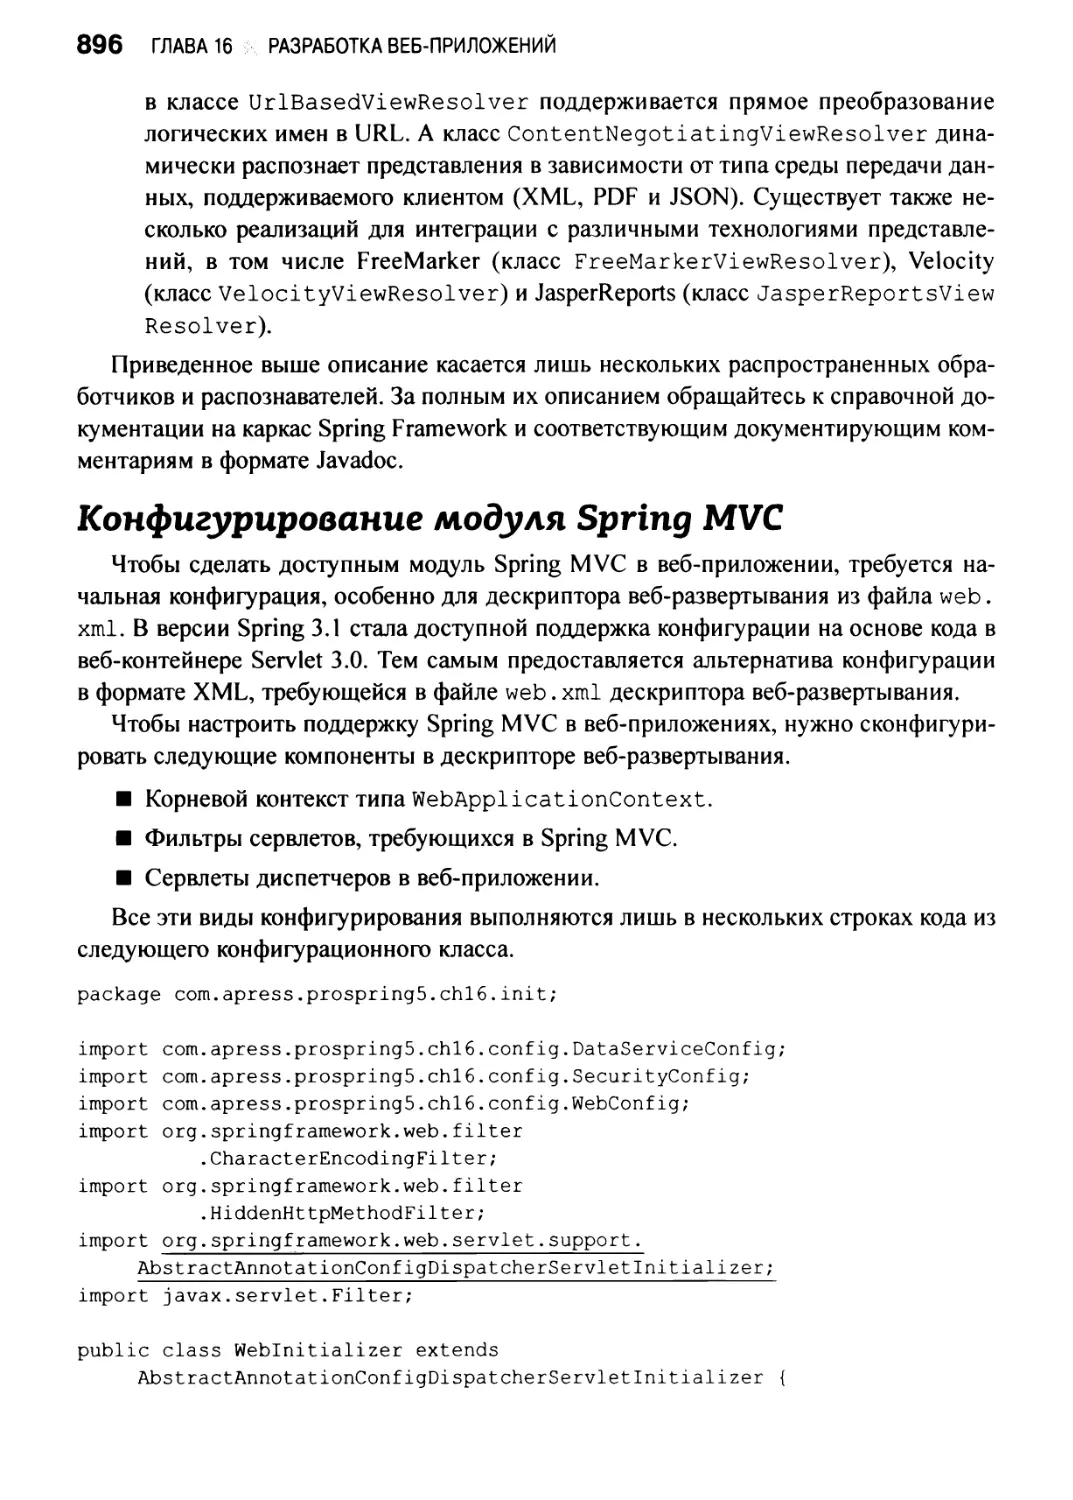 Конфигурирование модуля Spring MVC